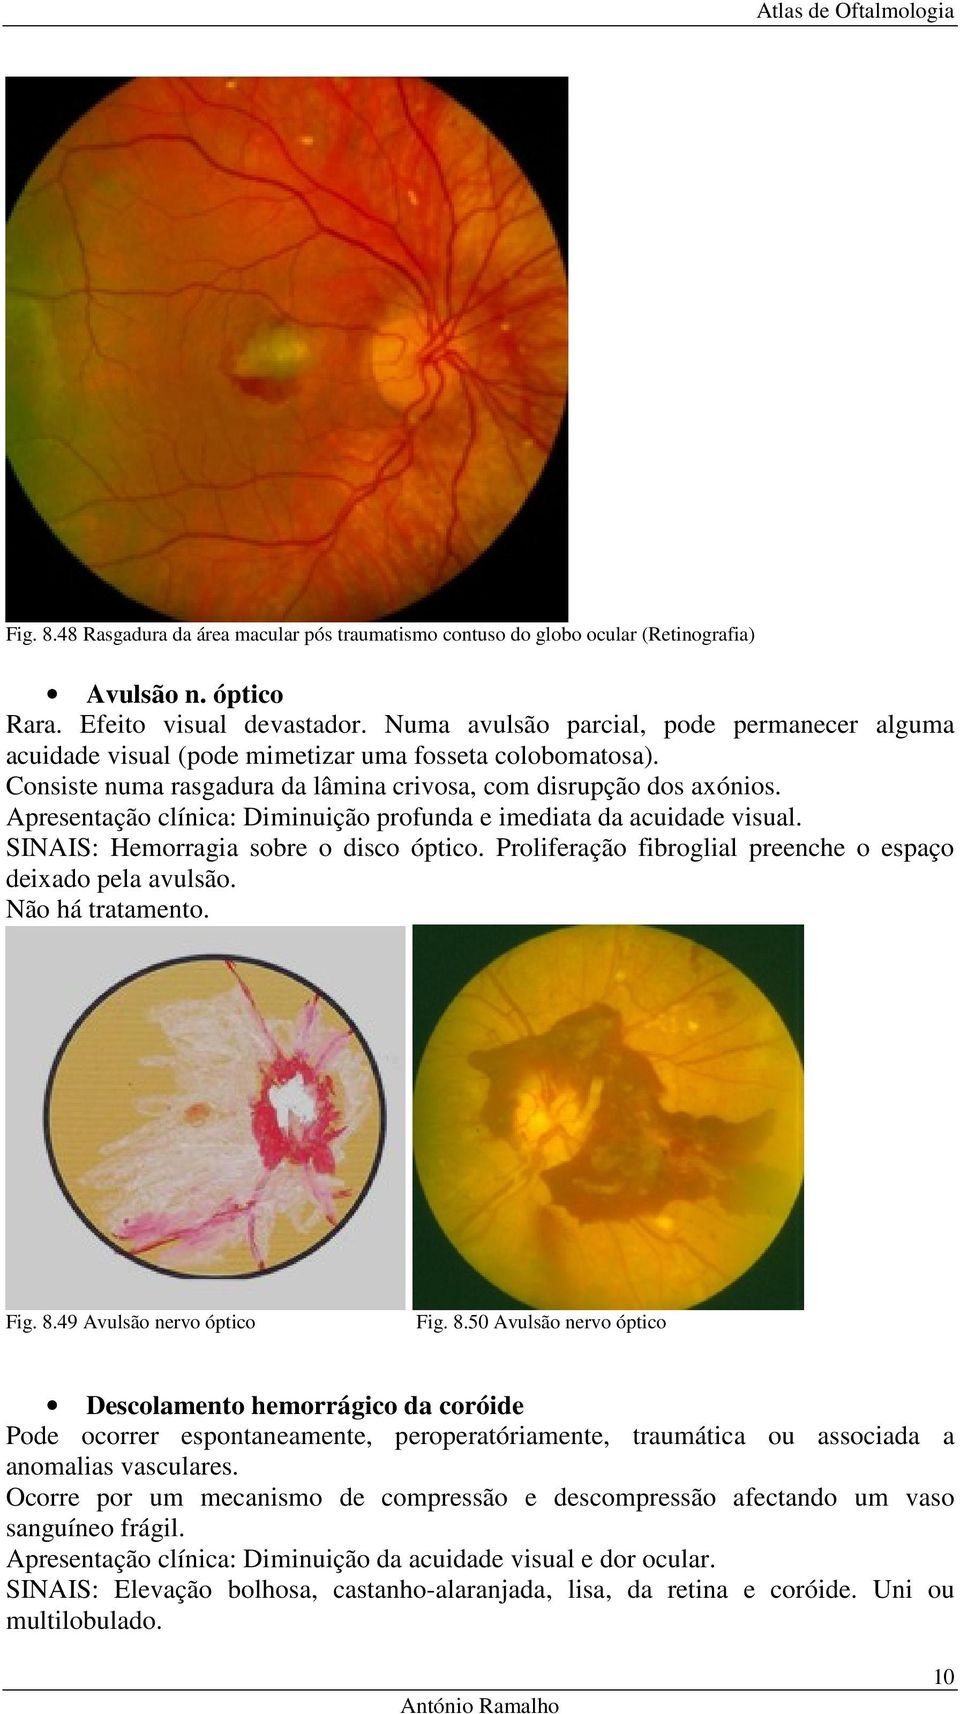 Apresentação clínica: Diminuição profunda e imediata da acuidade visual. SINAIS: Hemorragia sobre o disco óptico. Proliferação fibroglial preenche o espaço deixado pela avulsão. Não há tratamento.